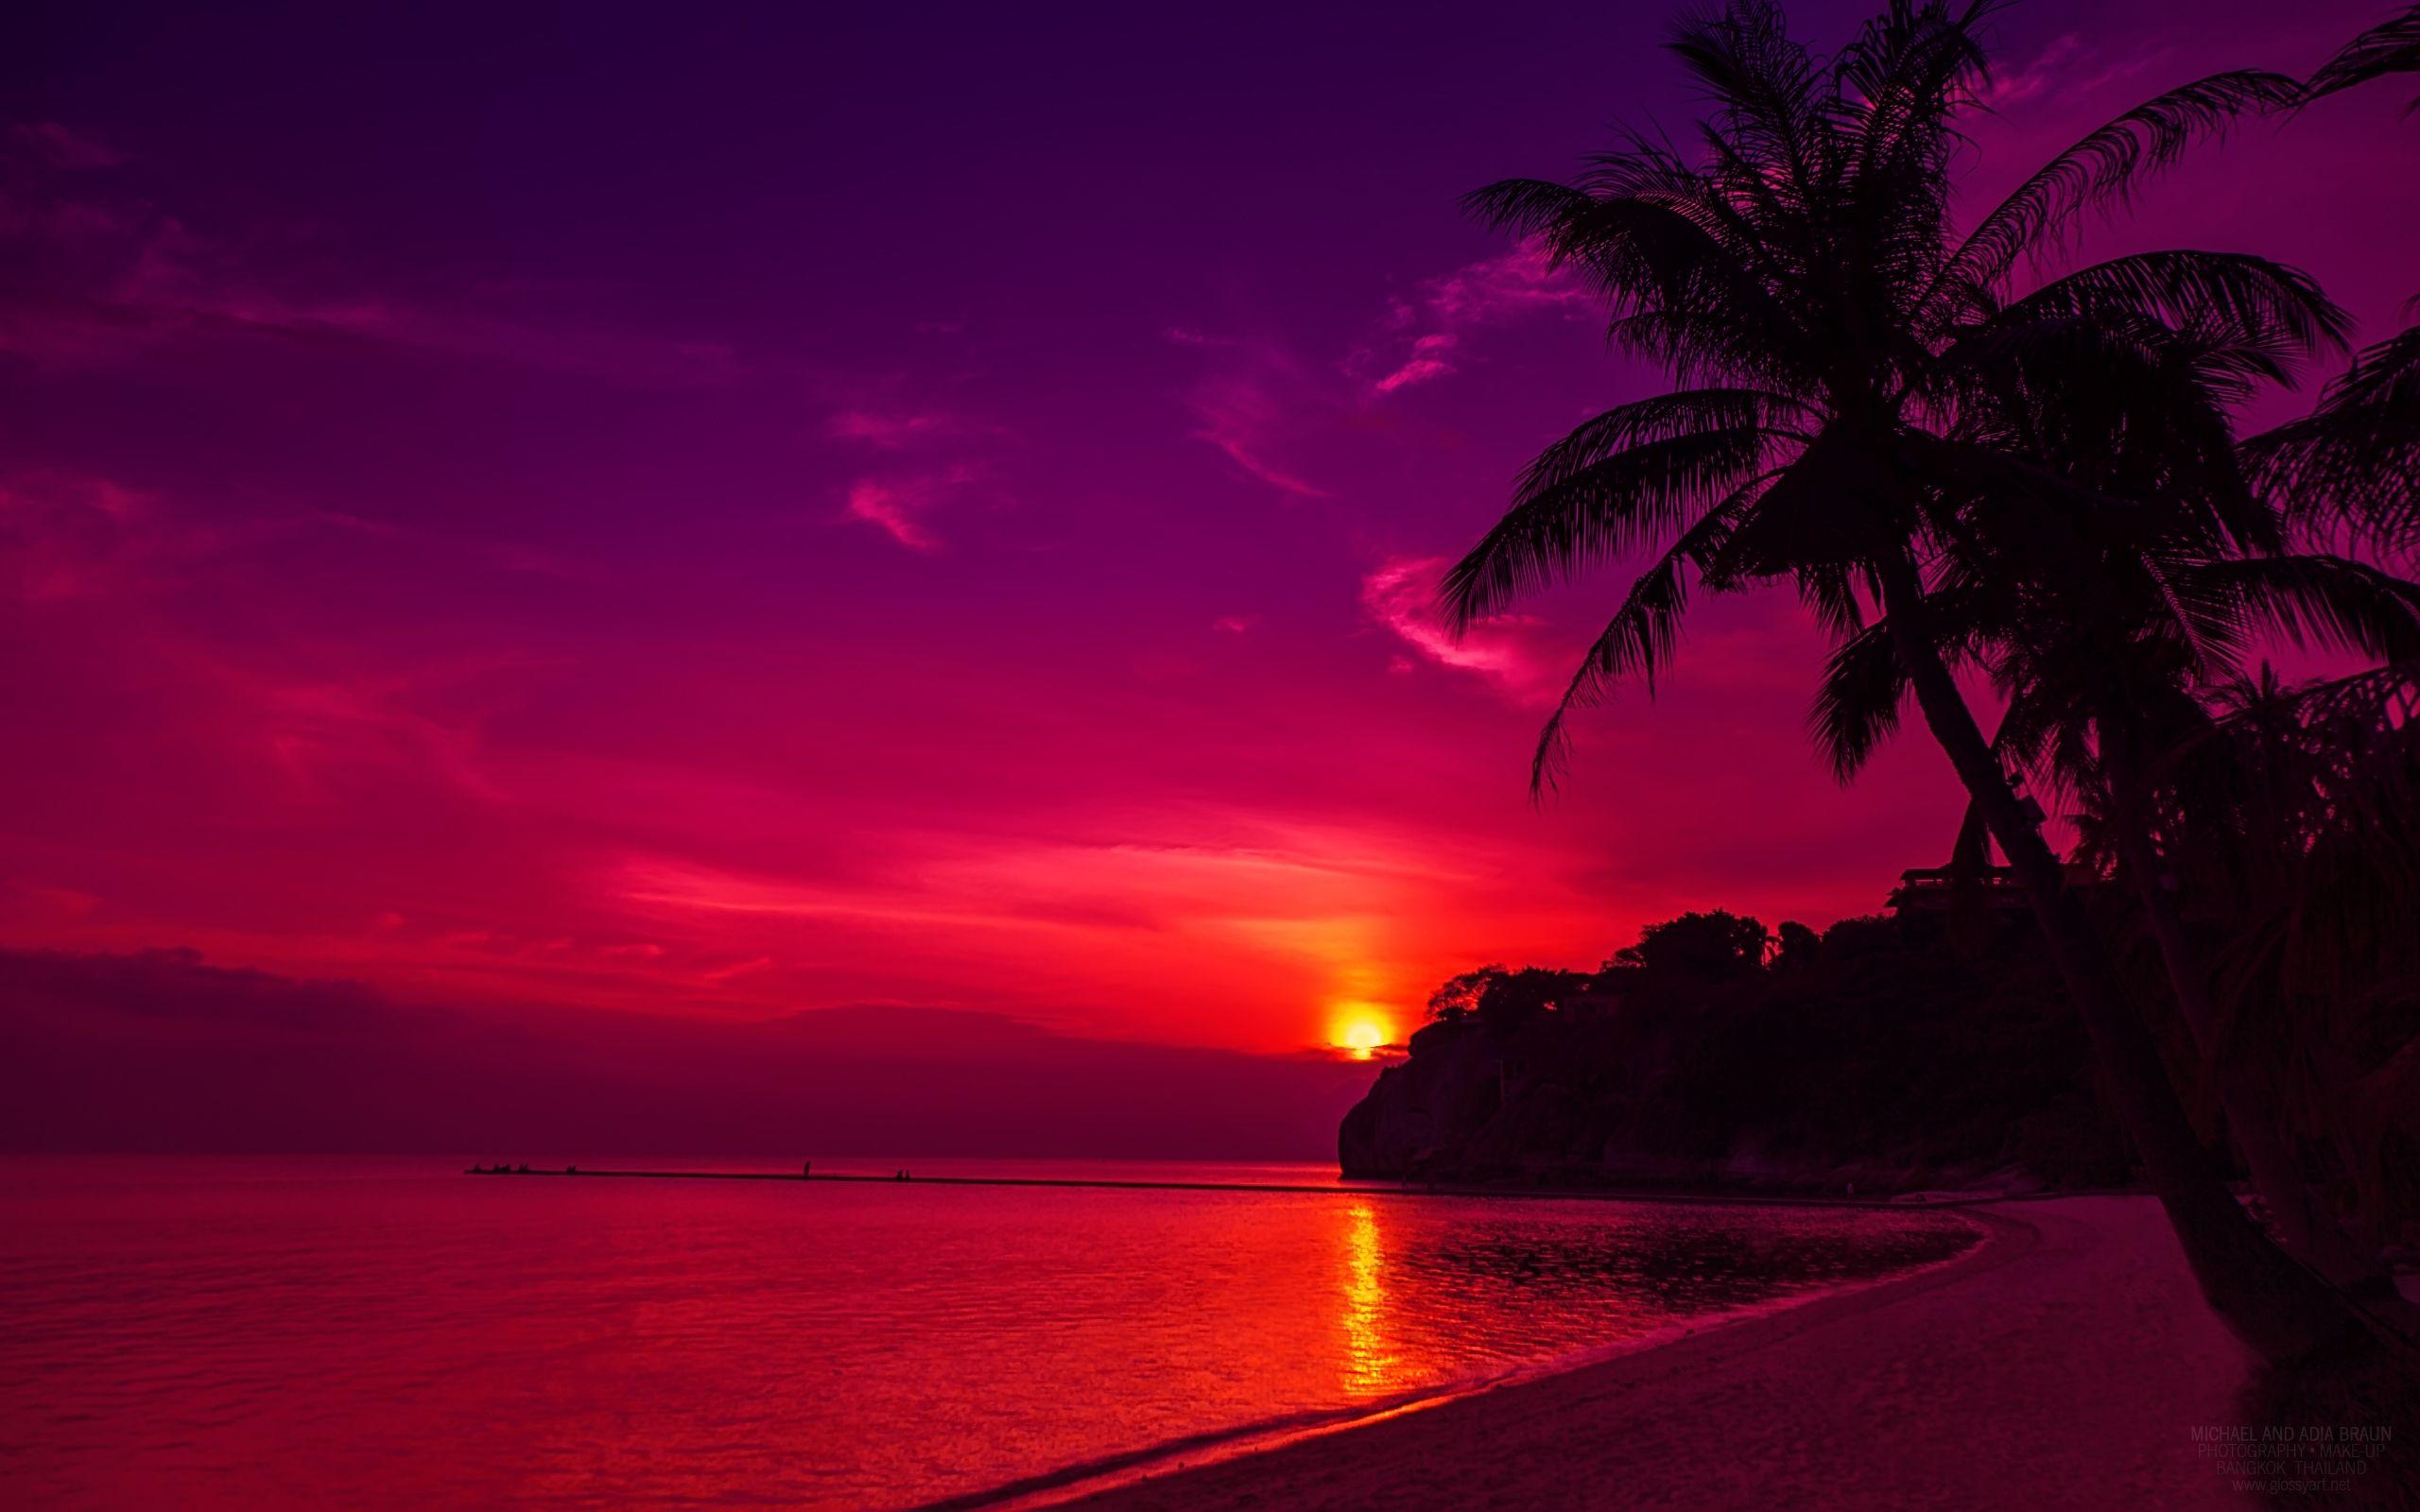 Thail Beach Sunset Wallpaper